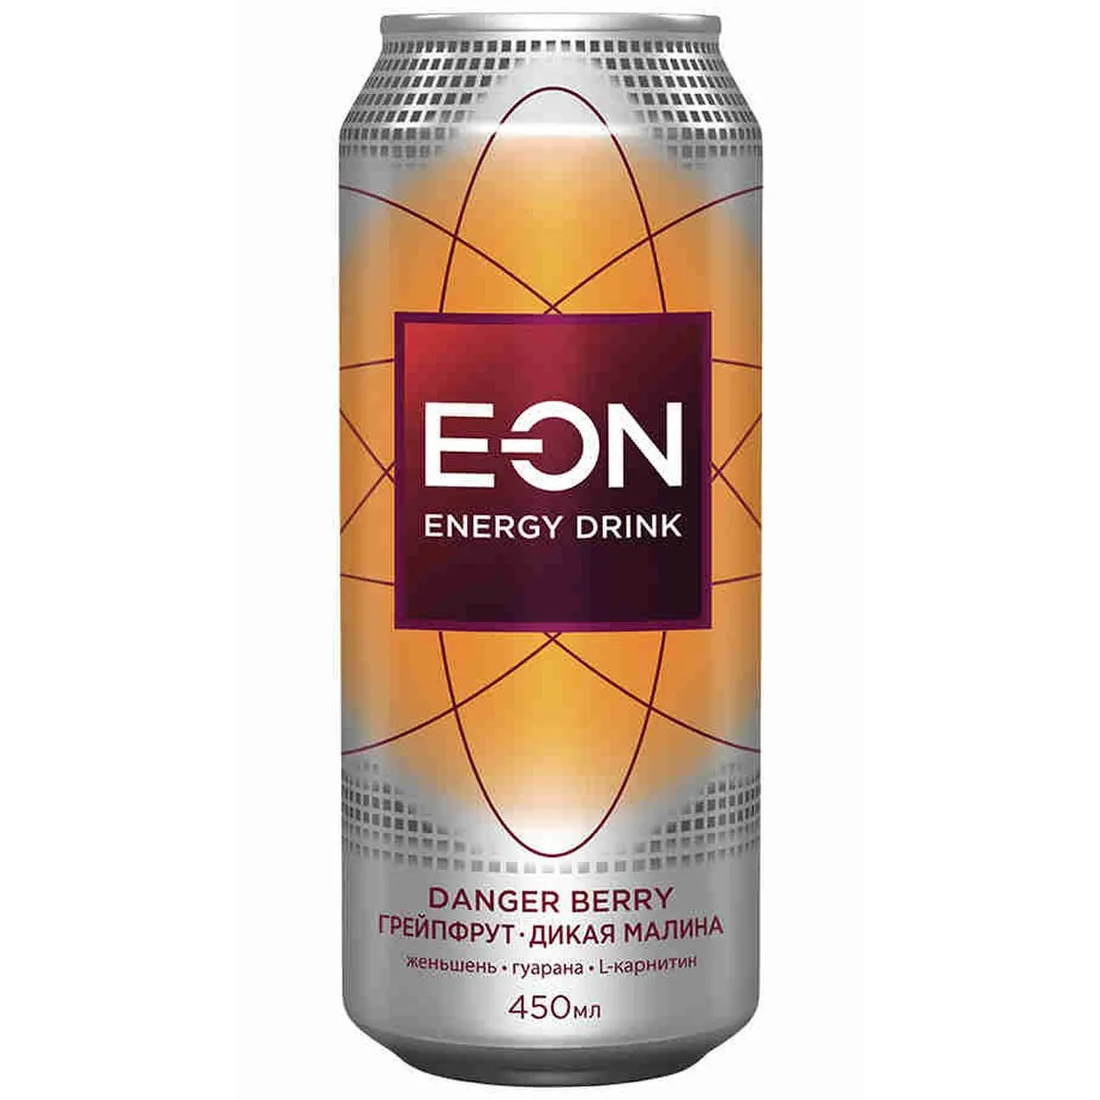 Напиток энергетический E-On Danger Berry, 0,45 мл напиток крым со вкусом лимона 1 литр газ пэт 12 шт в уп